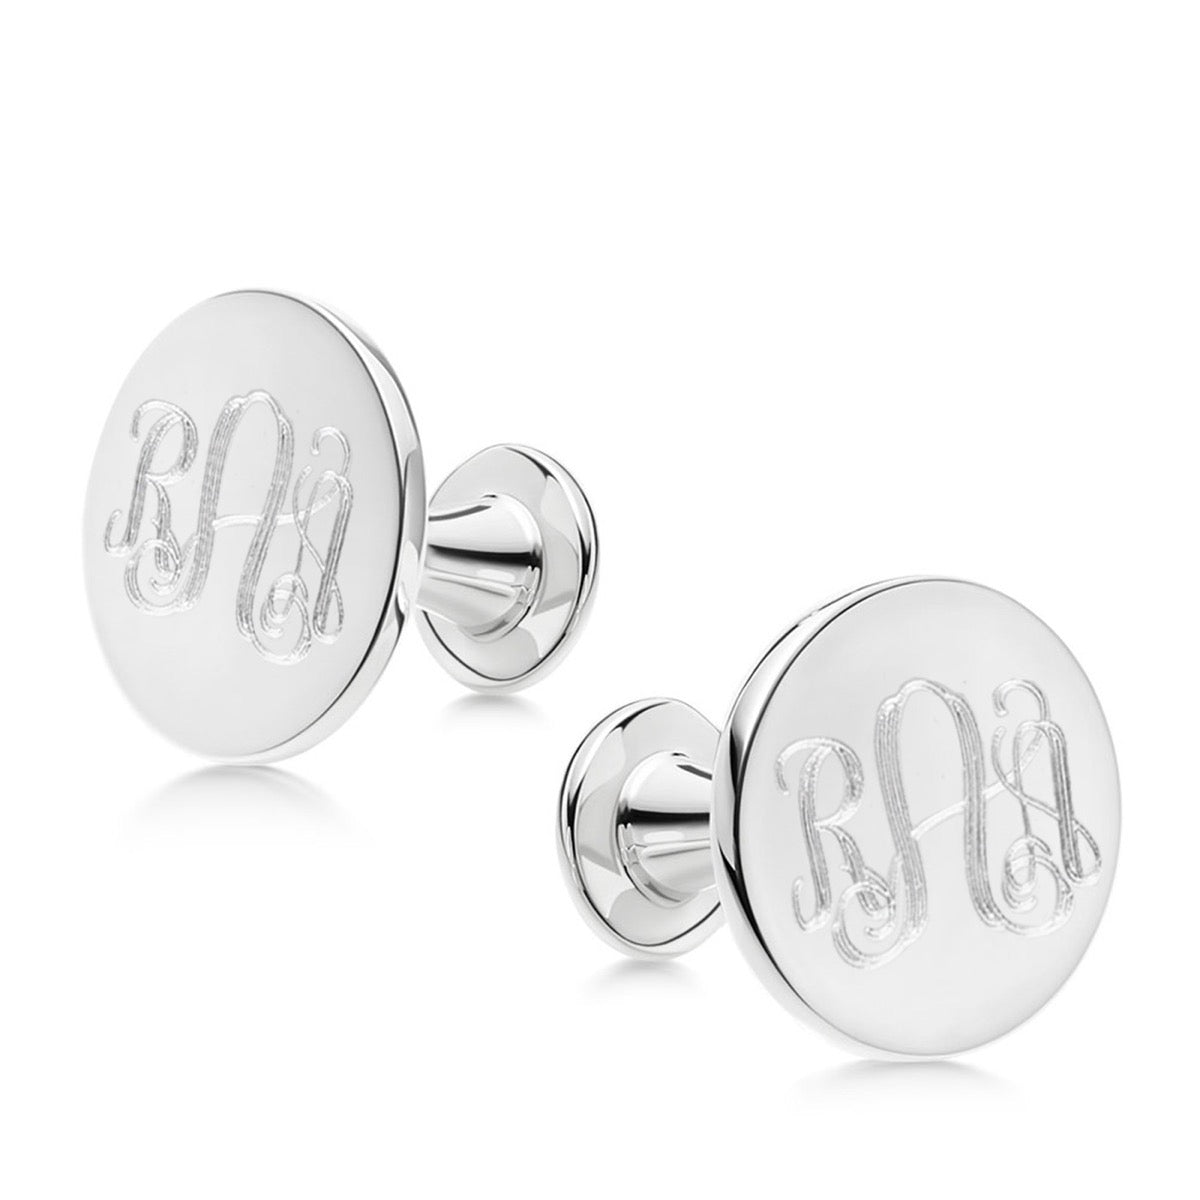 Silver monogram cufflinks